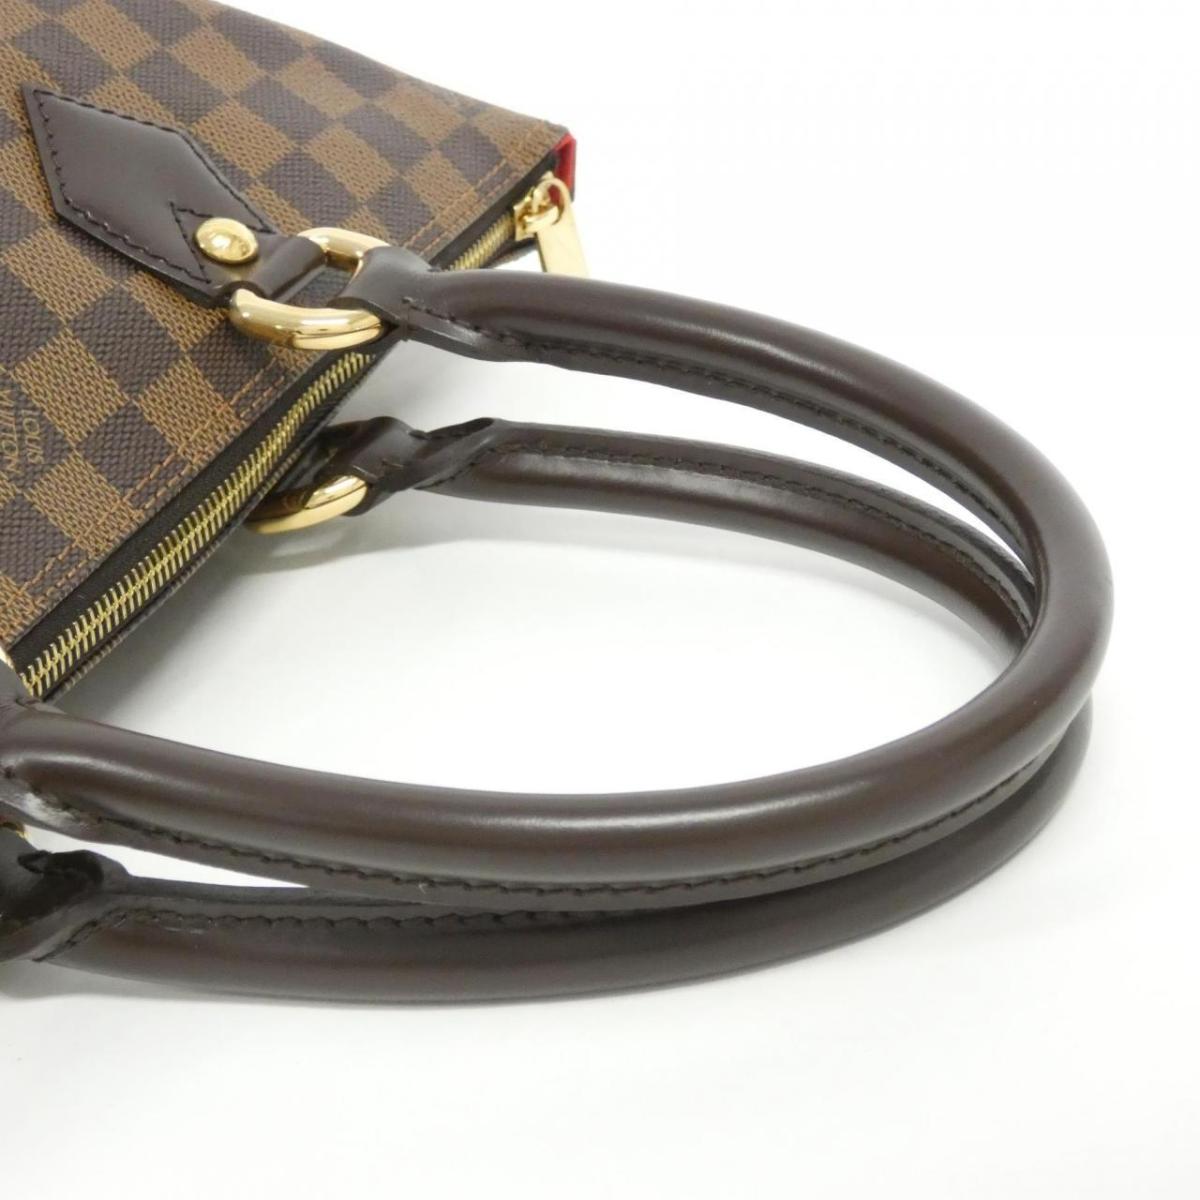 Louis Vuitton Damier ya PM N51183 Bag